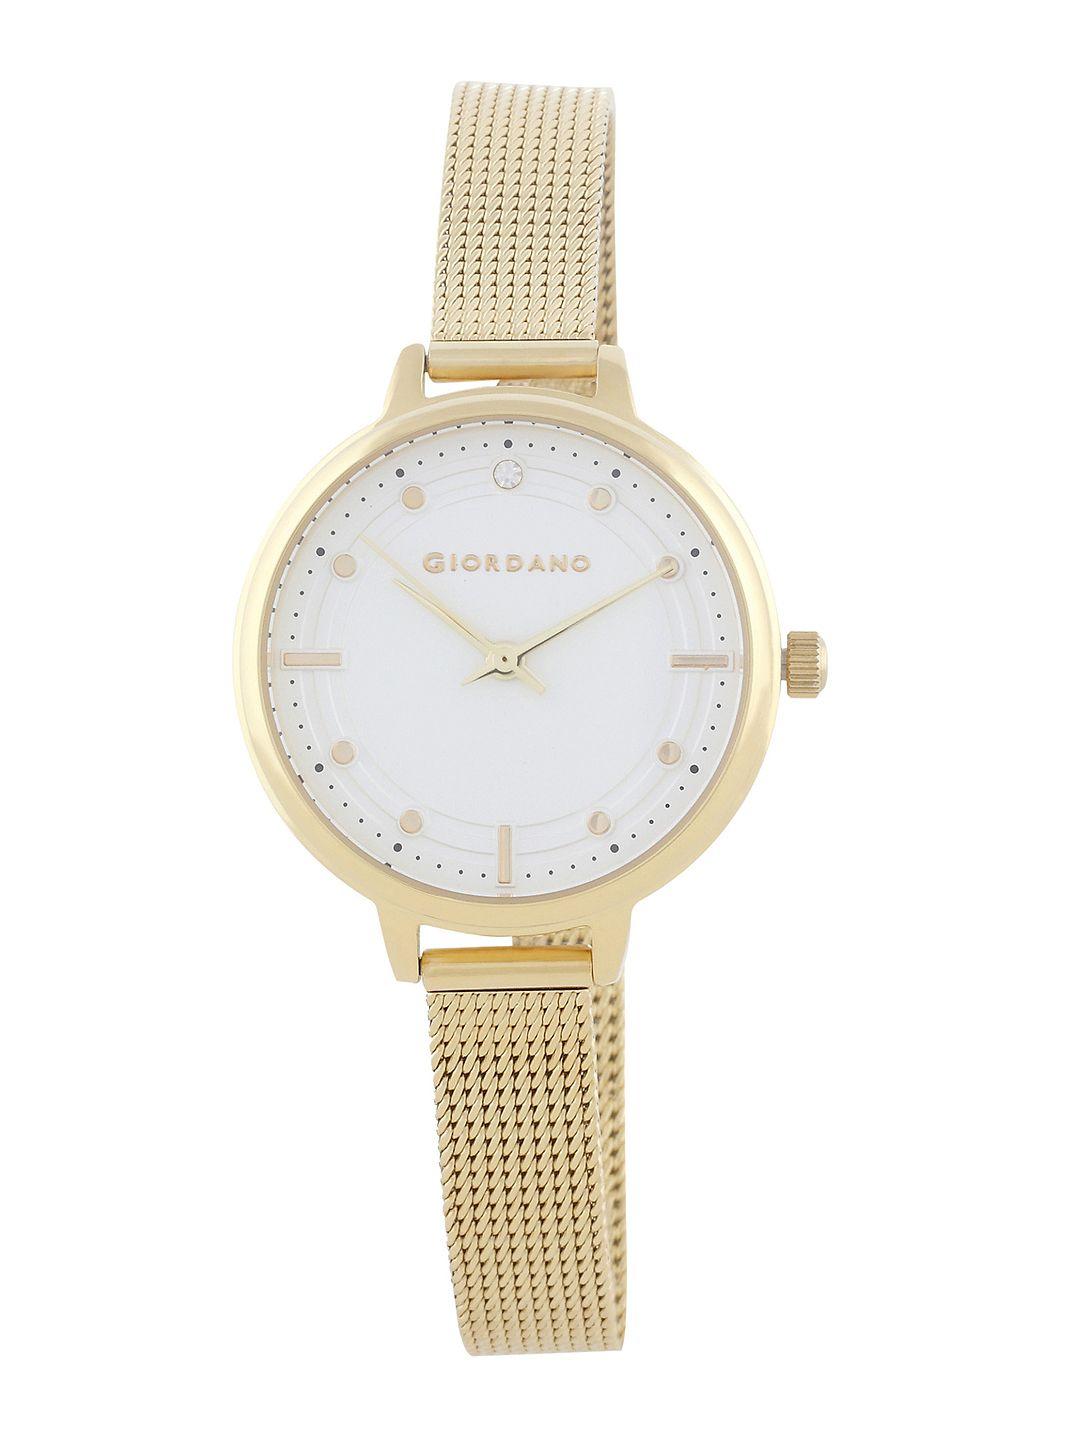 giordano-women-silver-toned-analogue-watch-2872-22